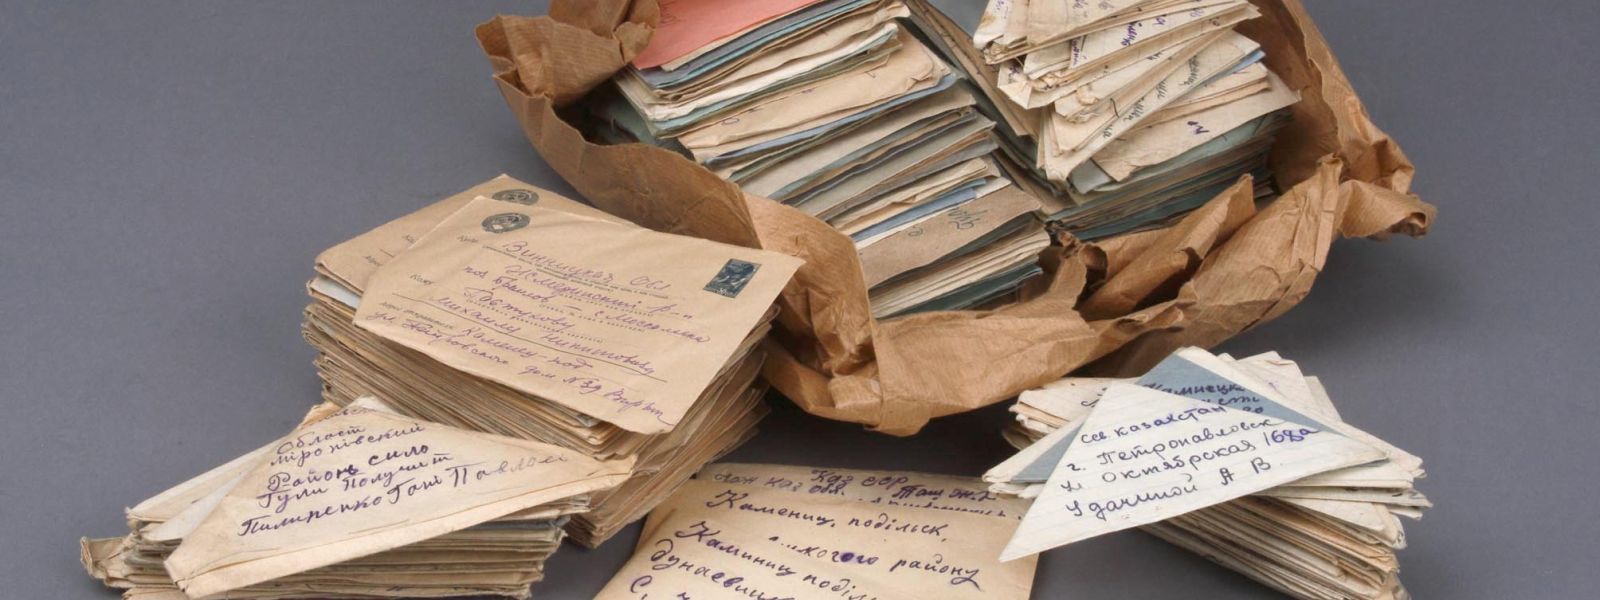 Briefe aus dem Postamt der ukrainischen Stadt Kamenez Podolski 1941/42, in der Ausstellung "Inventarnummer 1938" 